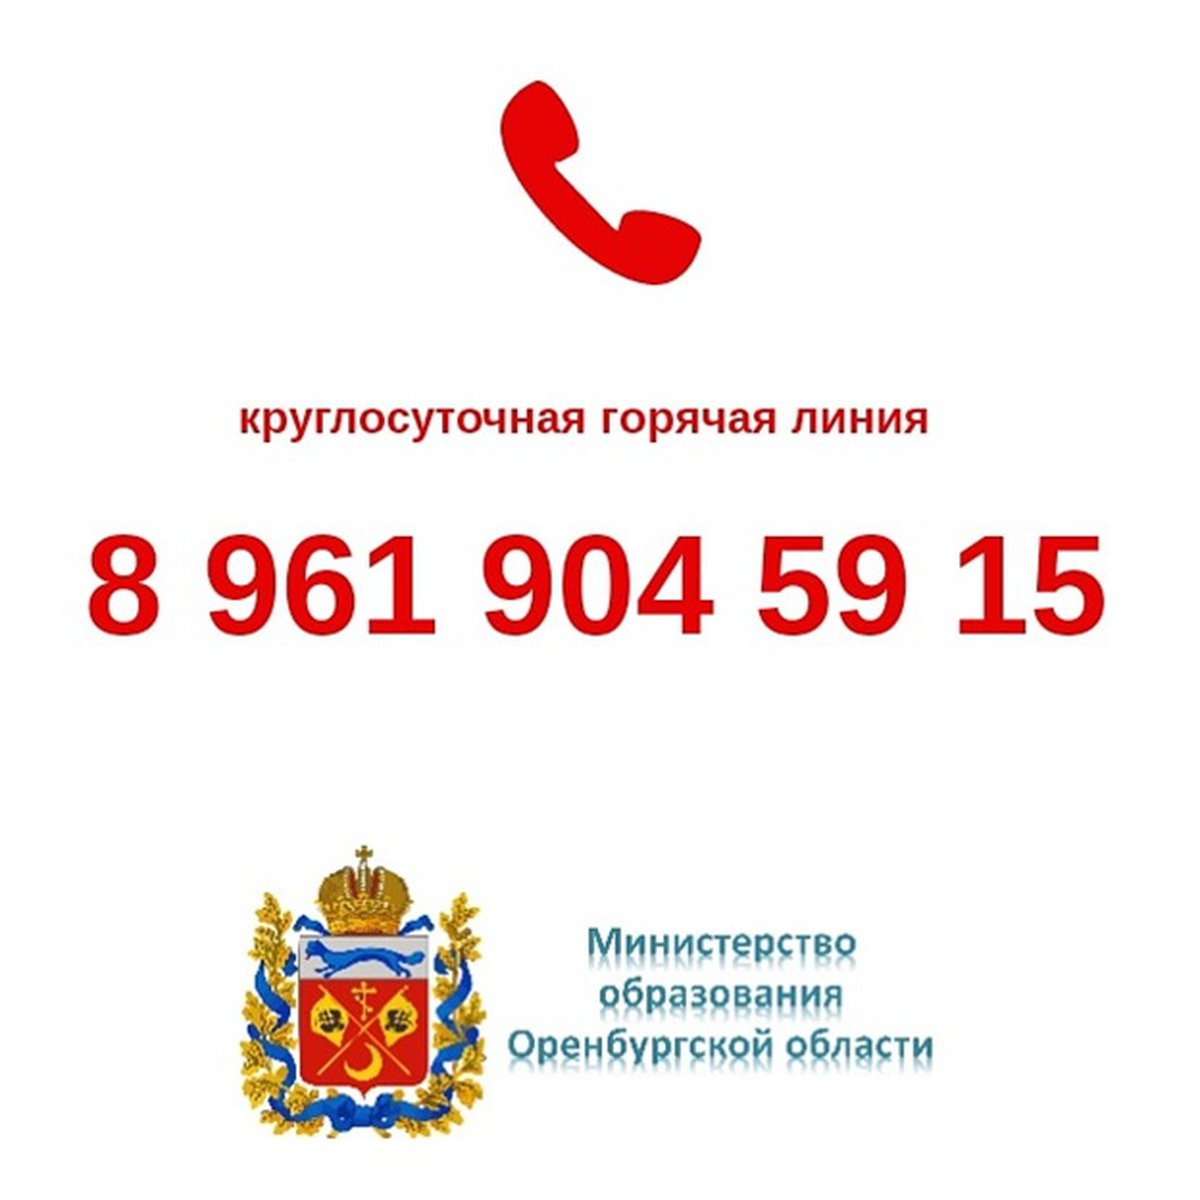 Номер телефона горячей линии оренбурга